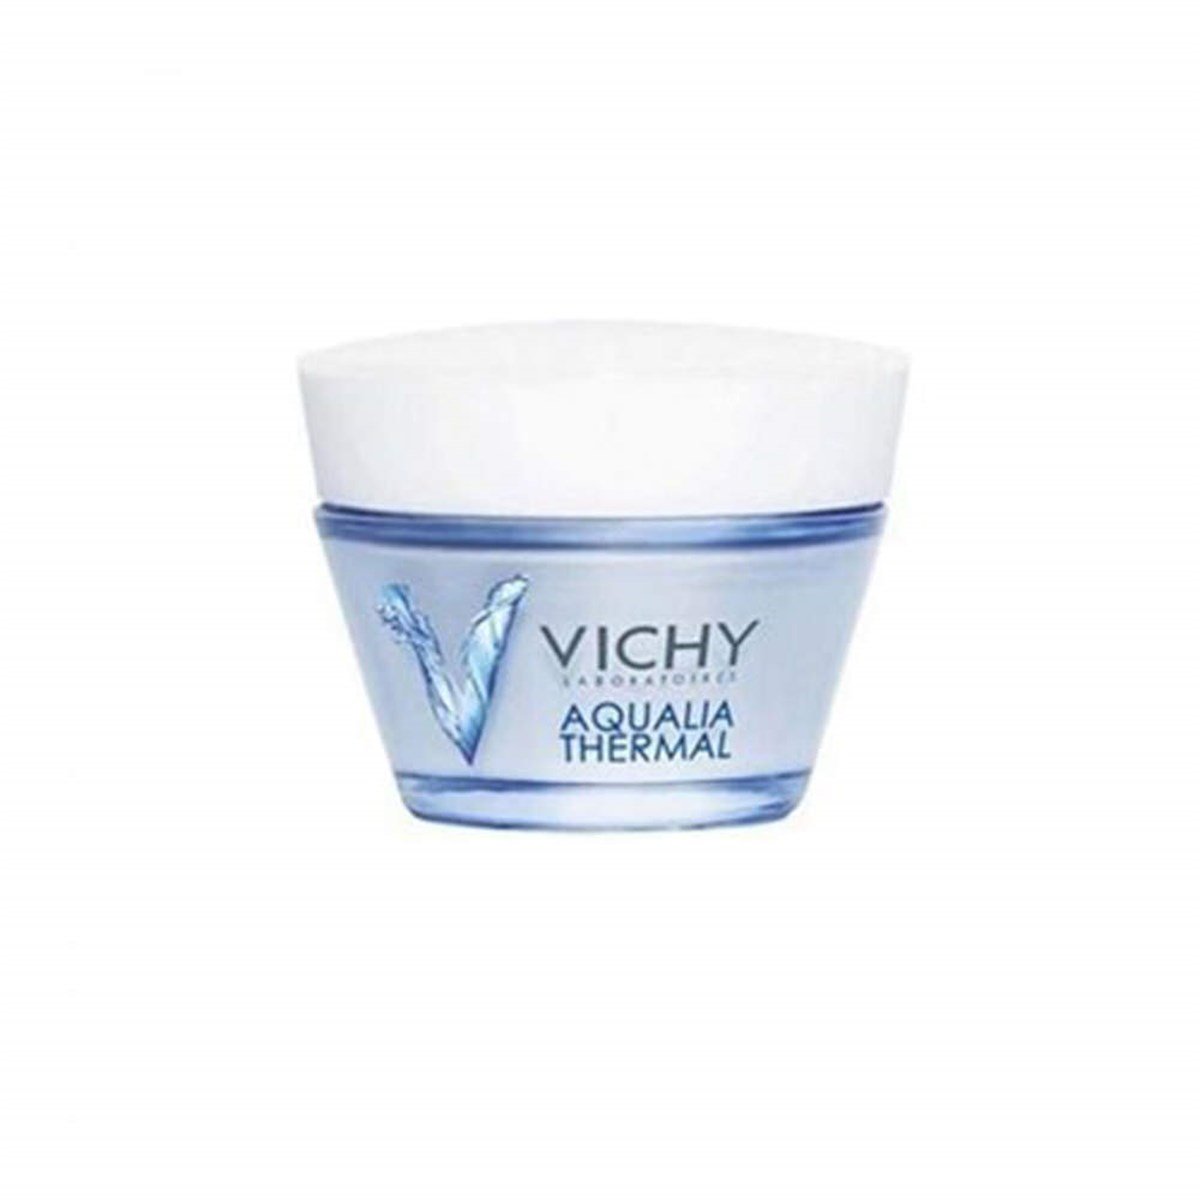 Vichy Aqualia Thermal Riche 50 ml - Kuru ve Hassas Ciltler İçin Nemlendirici